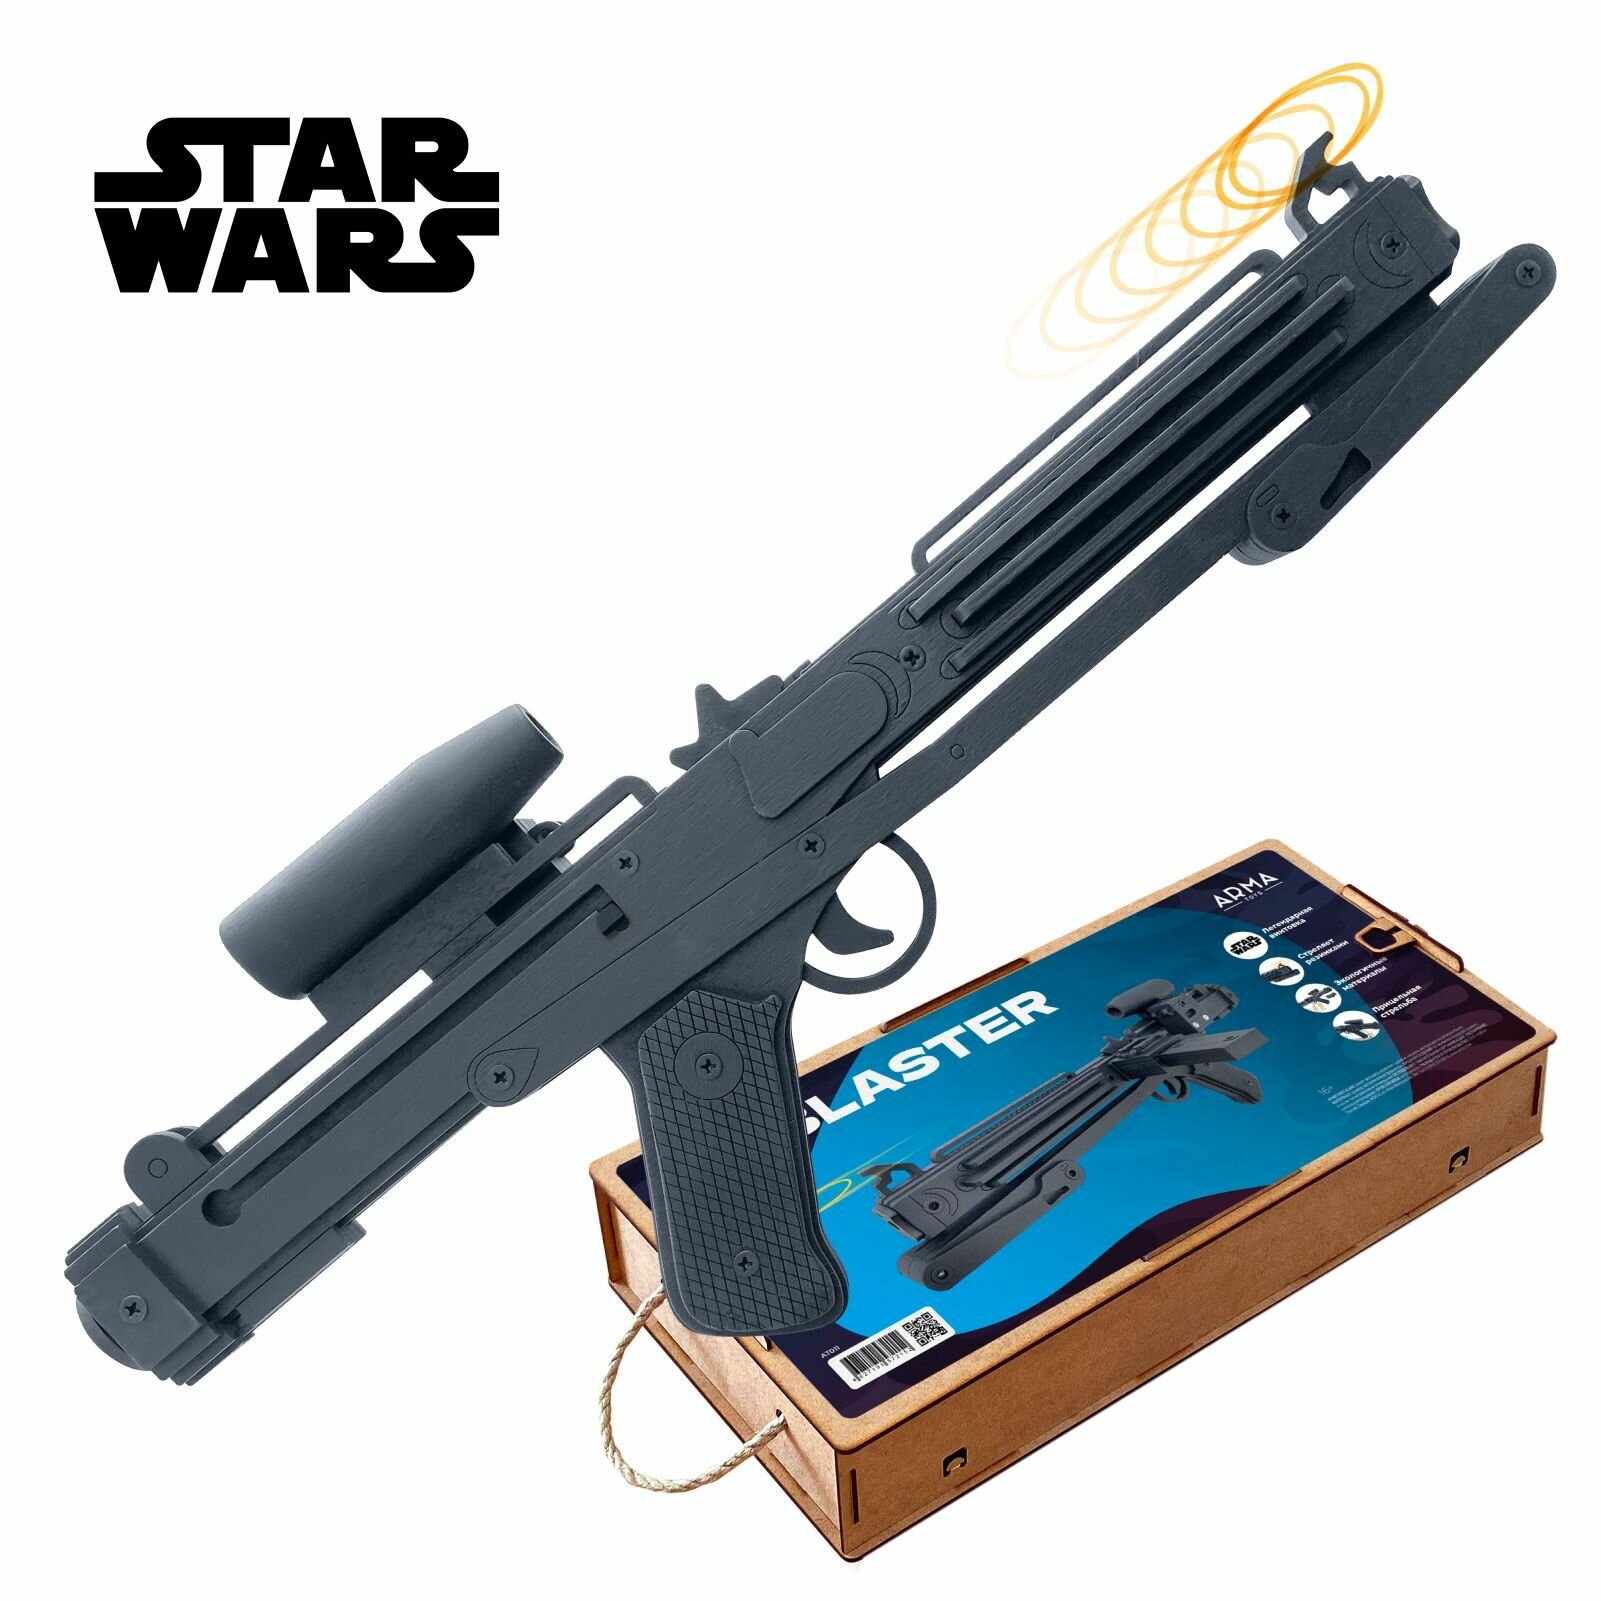 Лазерная винтовка штурмовика Е-11 Star Wars (Звездные войны)